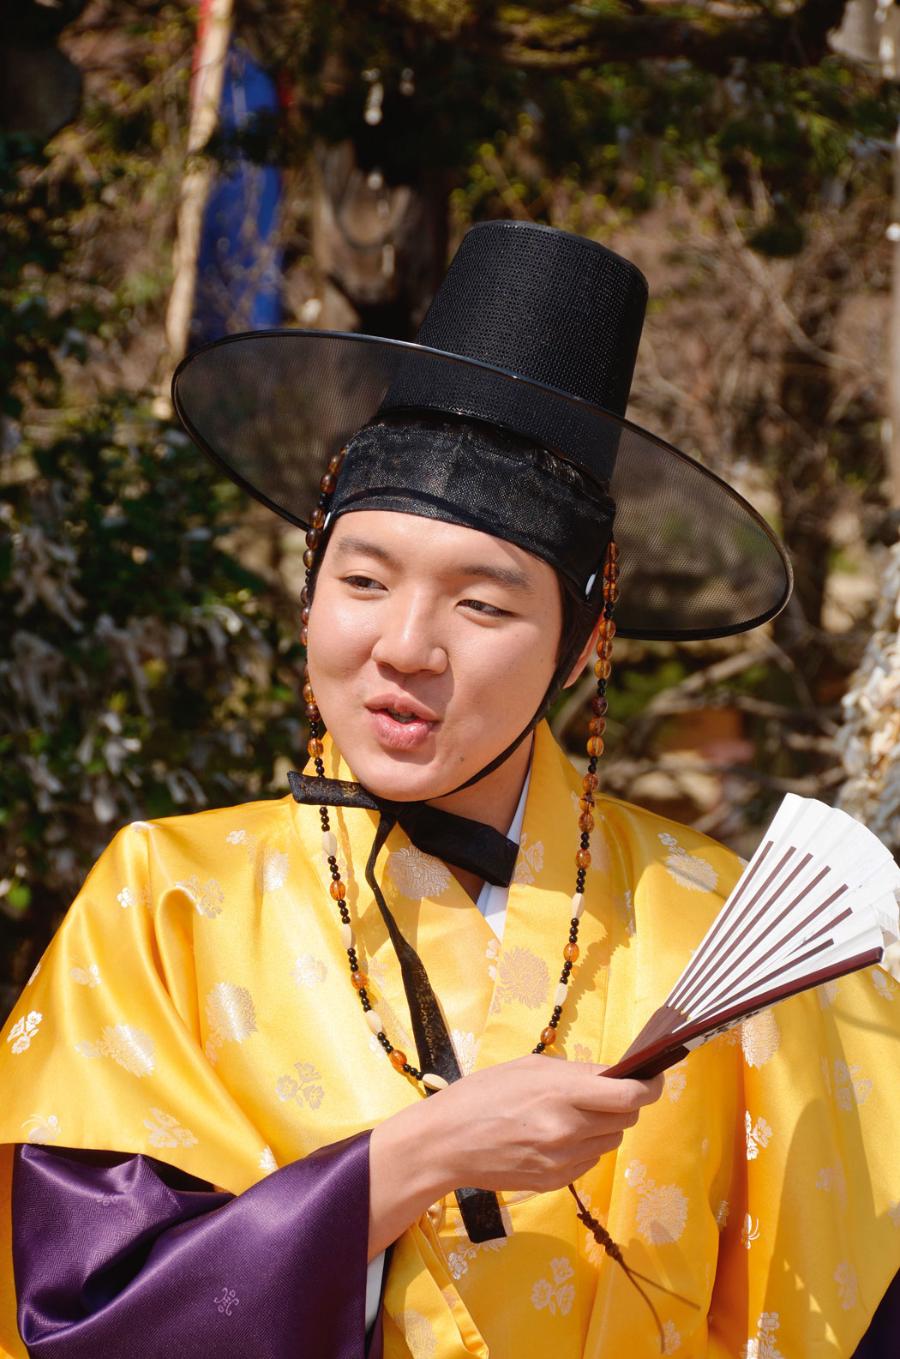 Aktor w tradycyjnym kapeluszu, noszonym przed laty przez żonatych Koreańczyków.